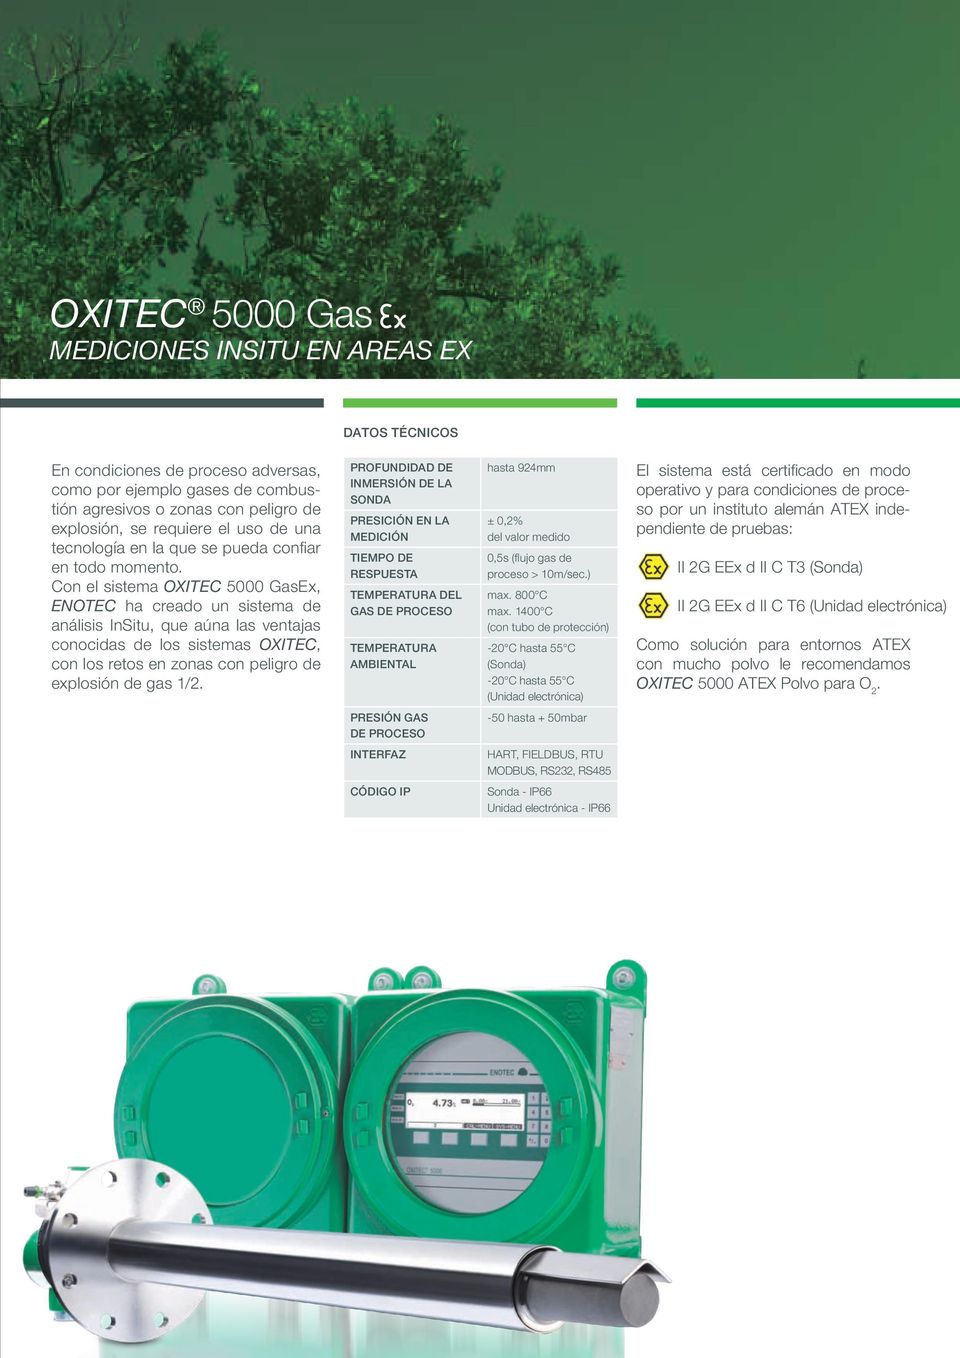 Con el sistema OXITEC 5000 GasEx, ENOTEC ha creado un sistema de análisis InSitu, que aúna las ventajas conocidas de los sistemas OXITEC, con los retos en zonas con peligro de explosión de gas 1/2.